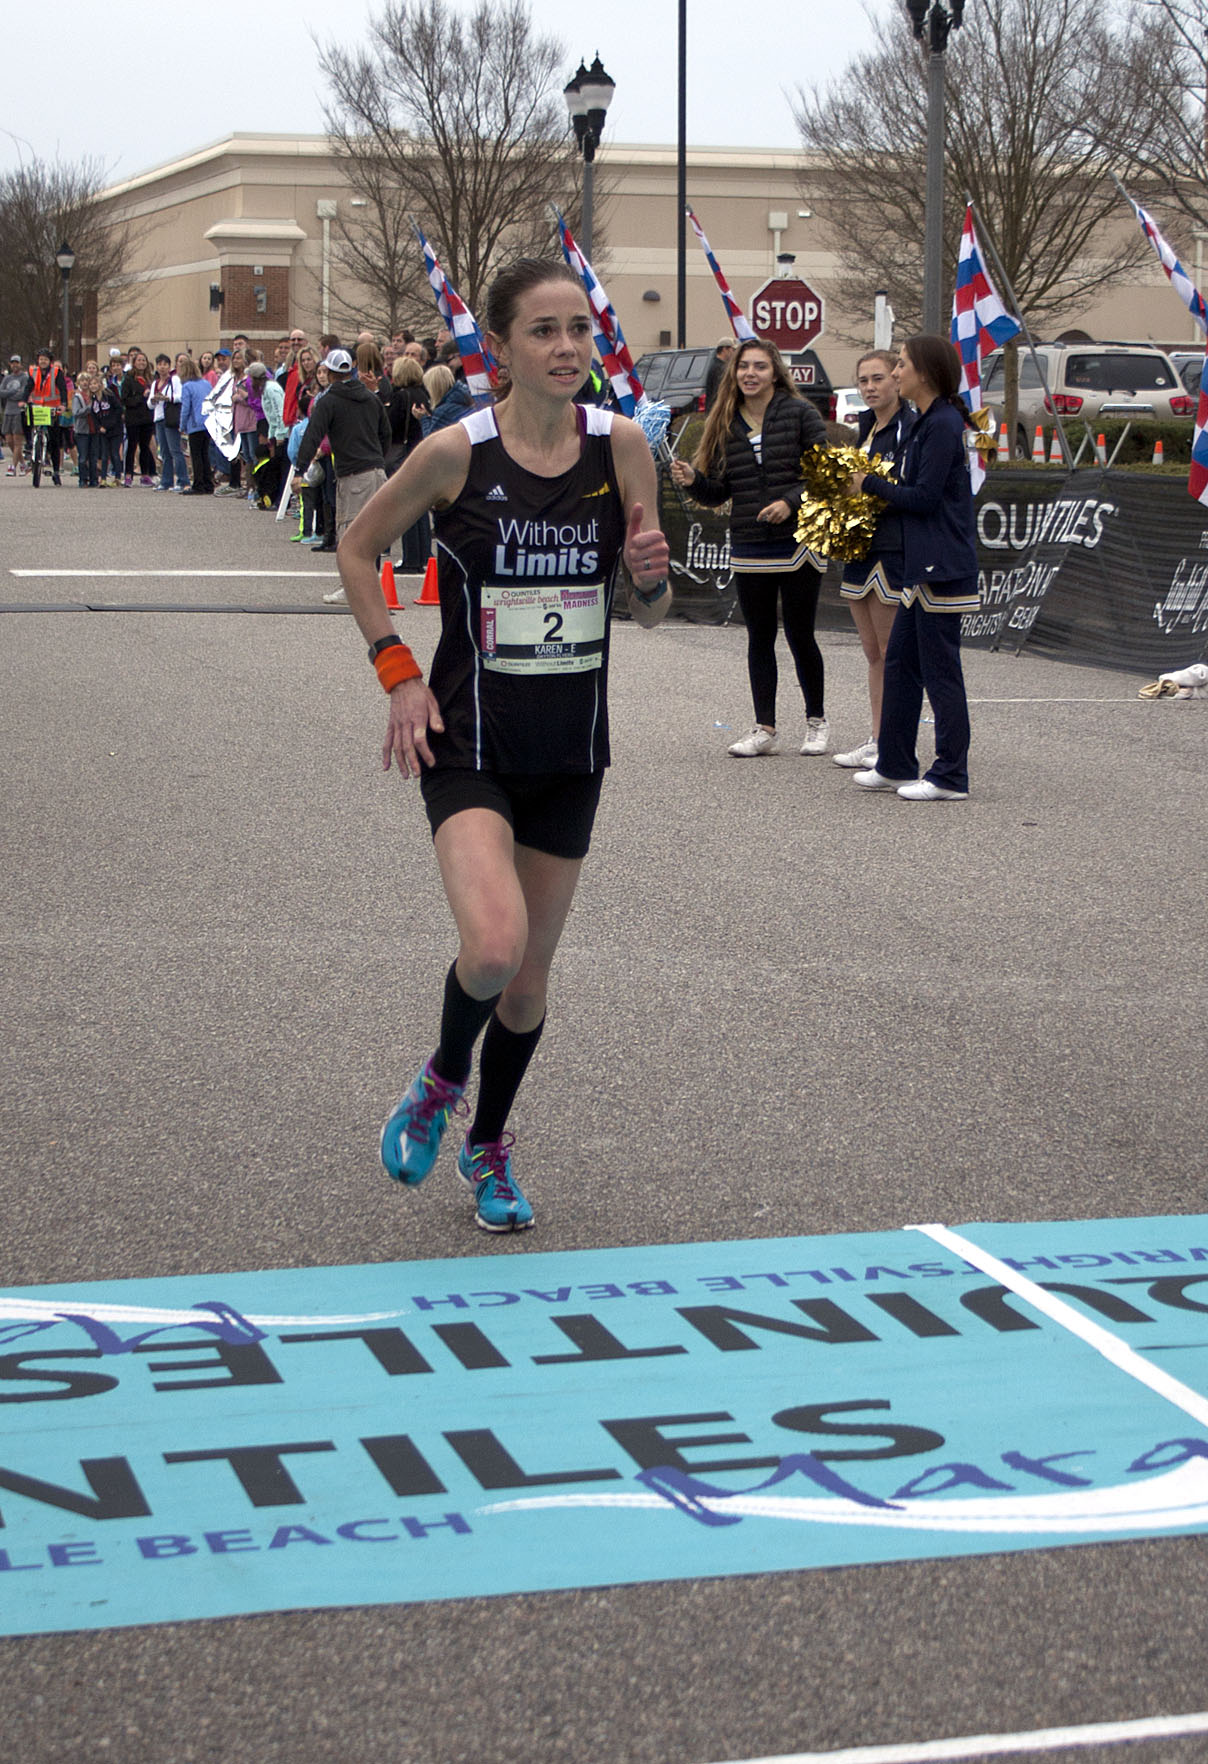 Karen Eckberg wins the women's division of the marathon.